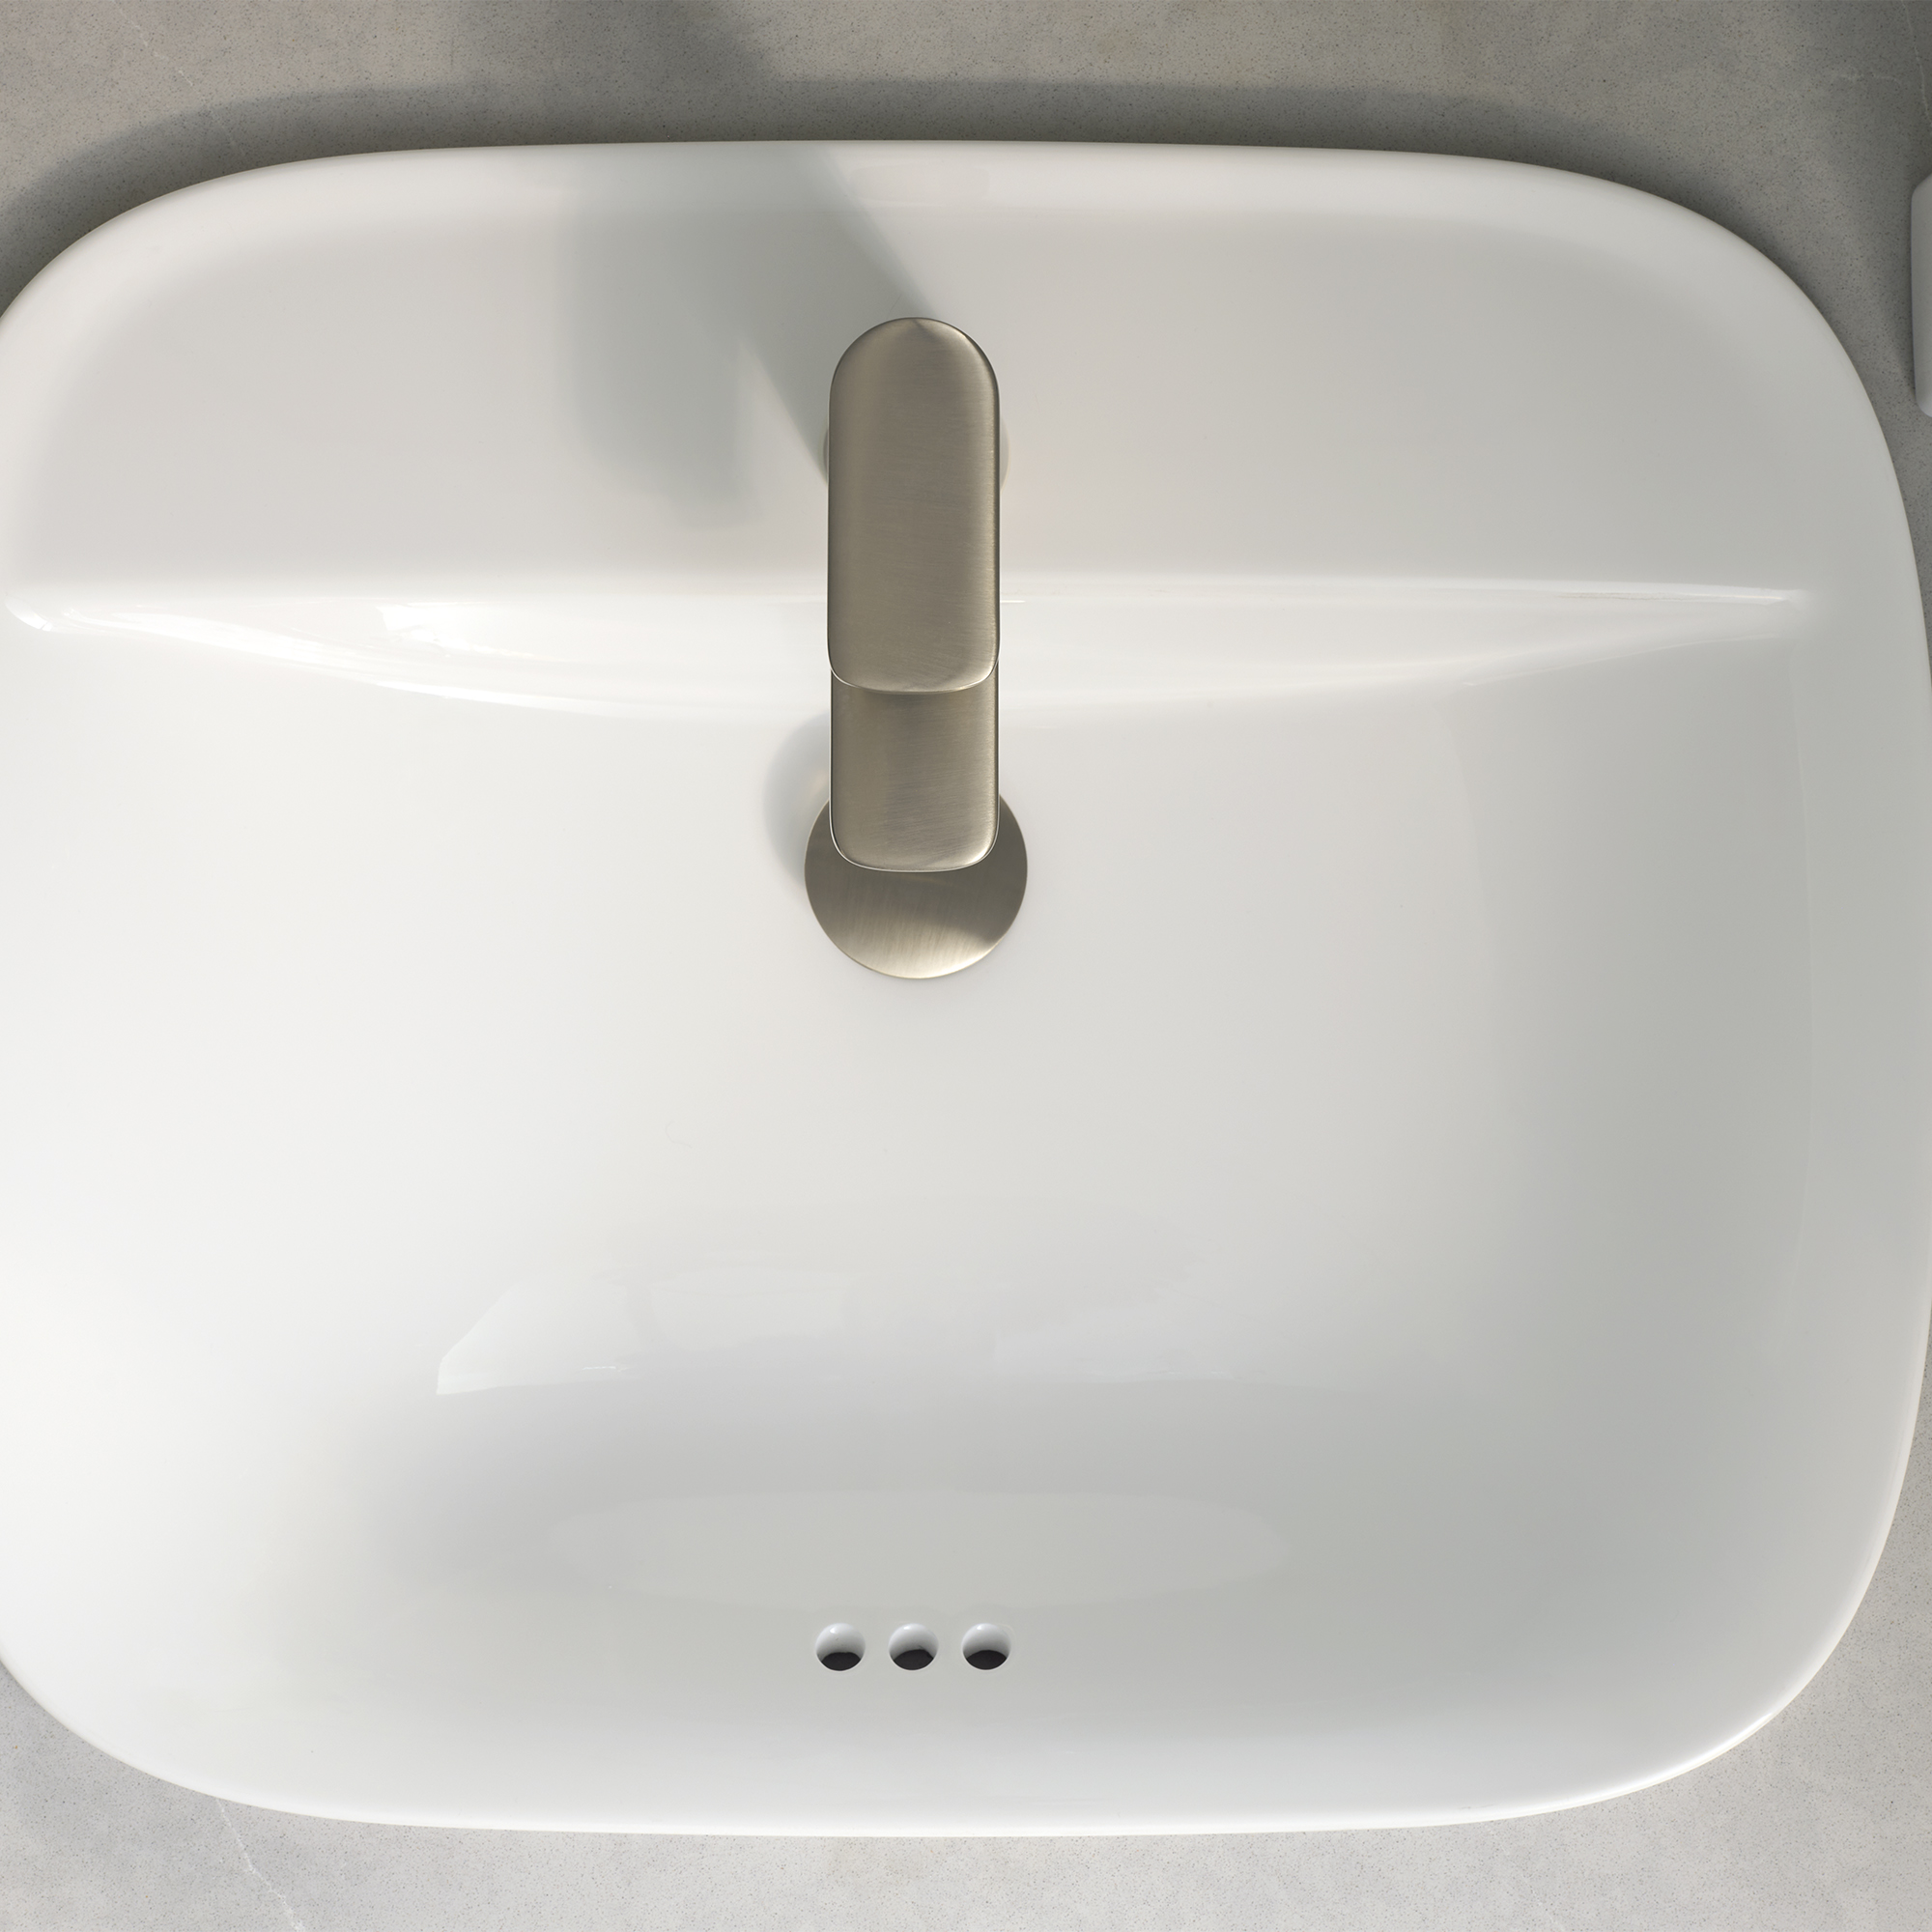 AspirationsMC - petit robinet de salle de bain, 1,2 gpm/ 4,5 L/min avec poignée simple à levier